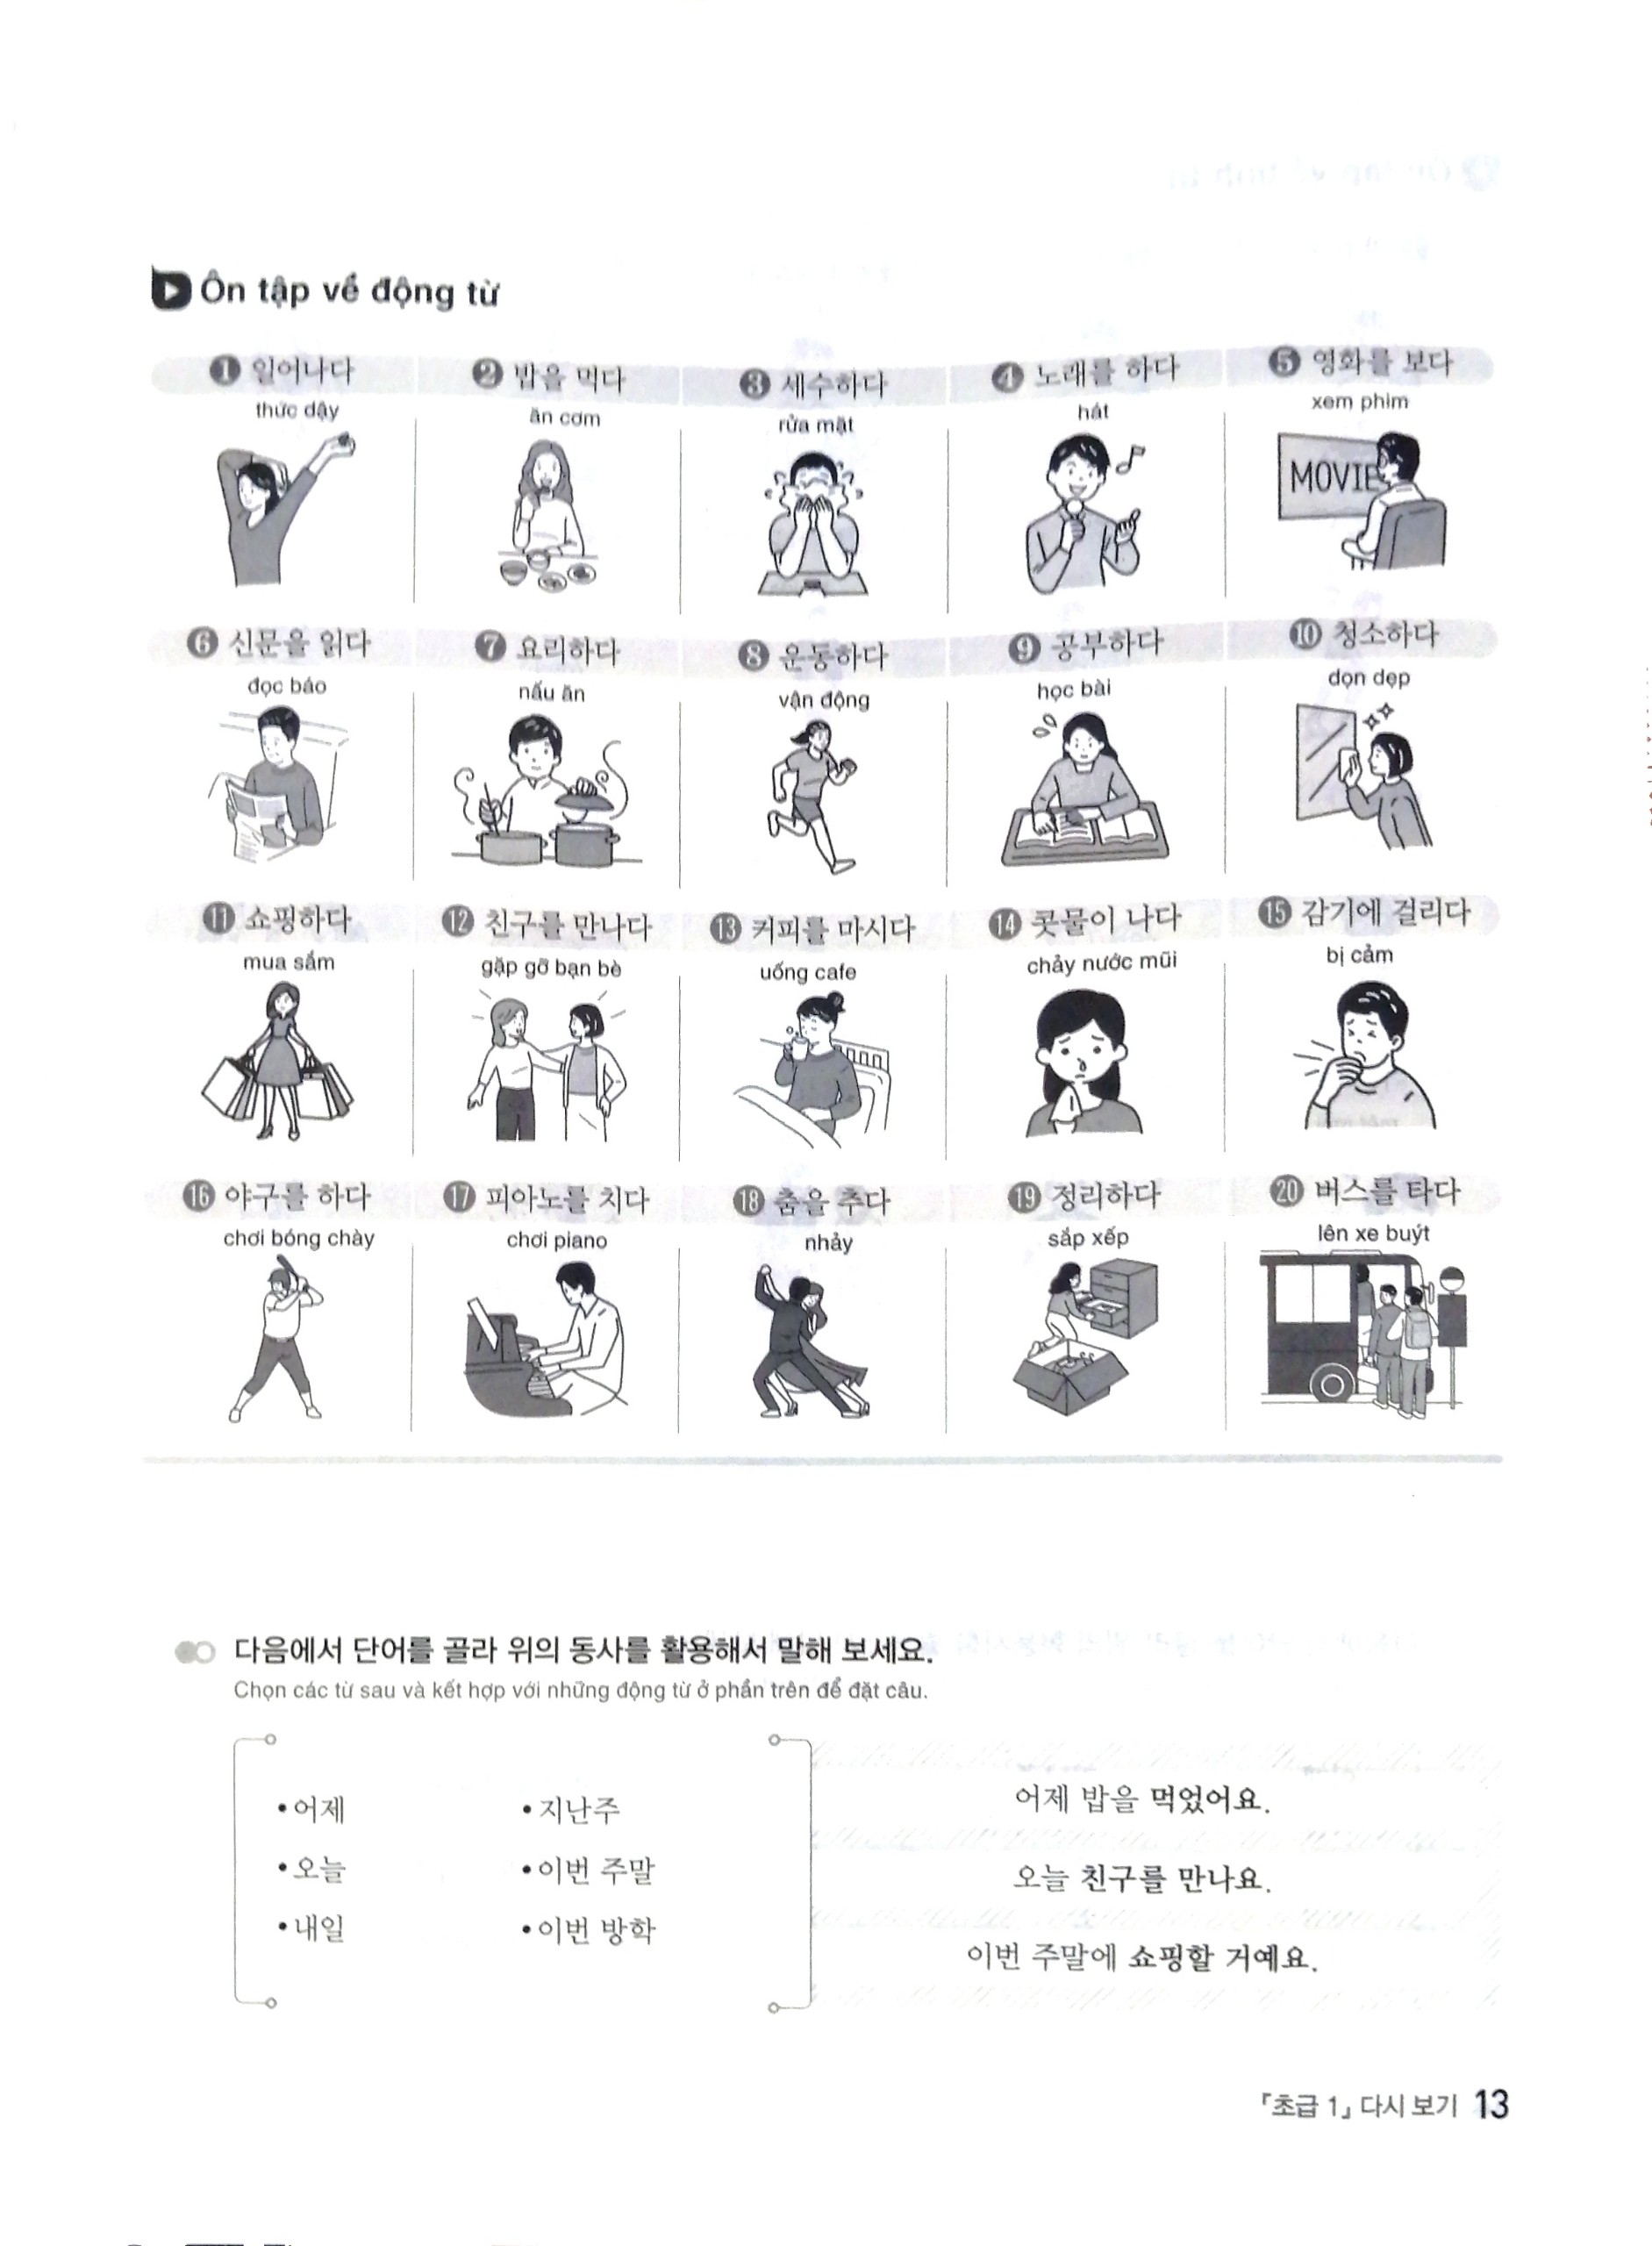 Tiếng Hàn Ứng Dụng - Học Nhanh, Thực Hành Ngay - Sơ Cấp 2 PDF